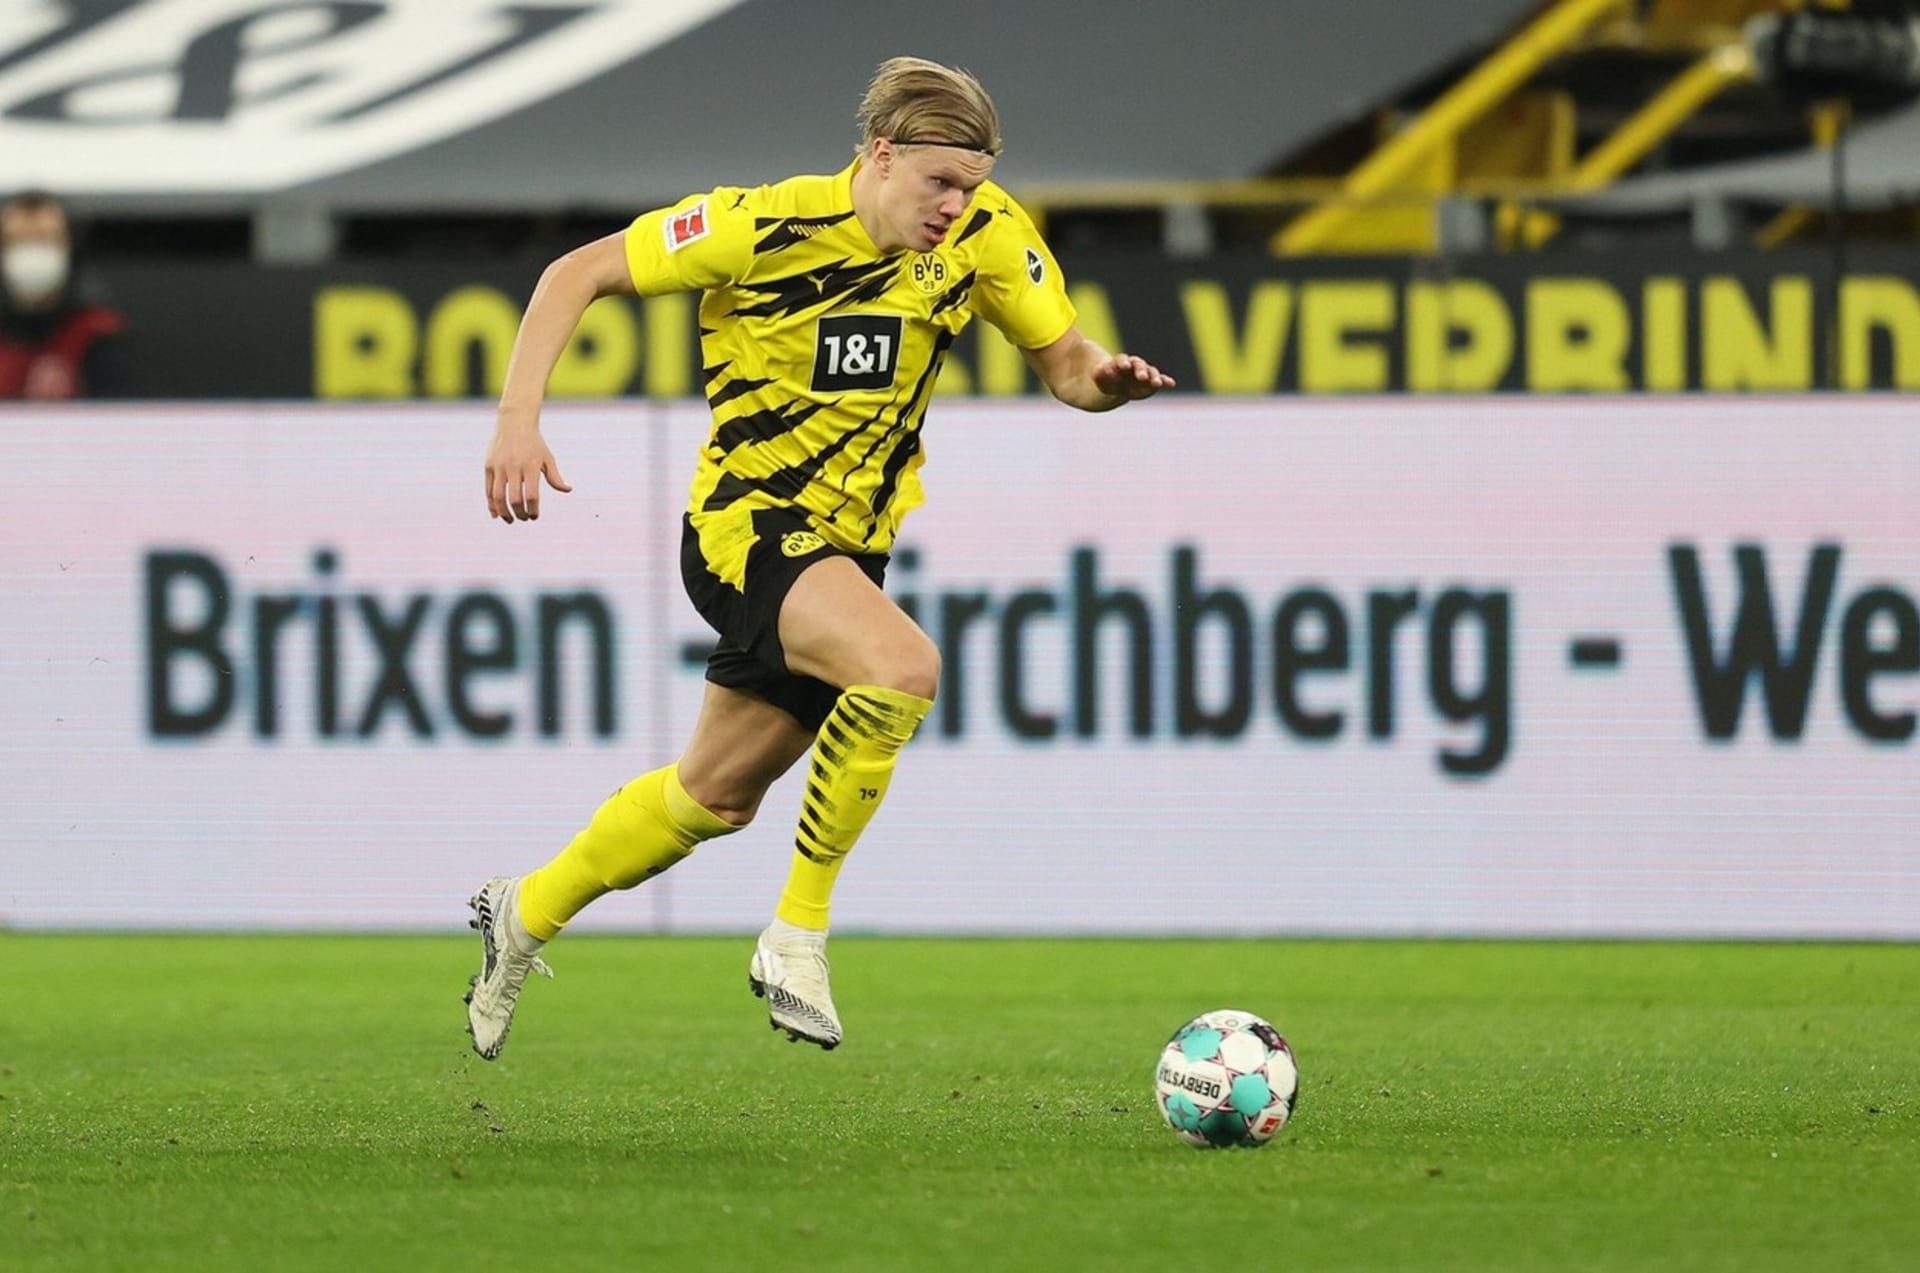 Norský útočník Erling Braut Haaland patří k nejžádanějším fotbalistům na světě. Loňskou sezonu strávil v německé Borussii Dortmund.